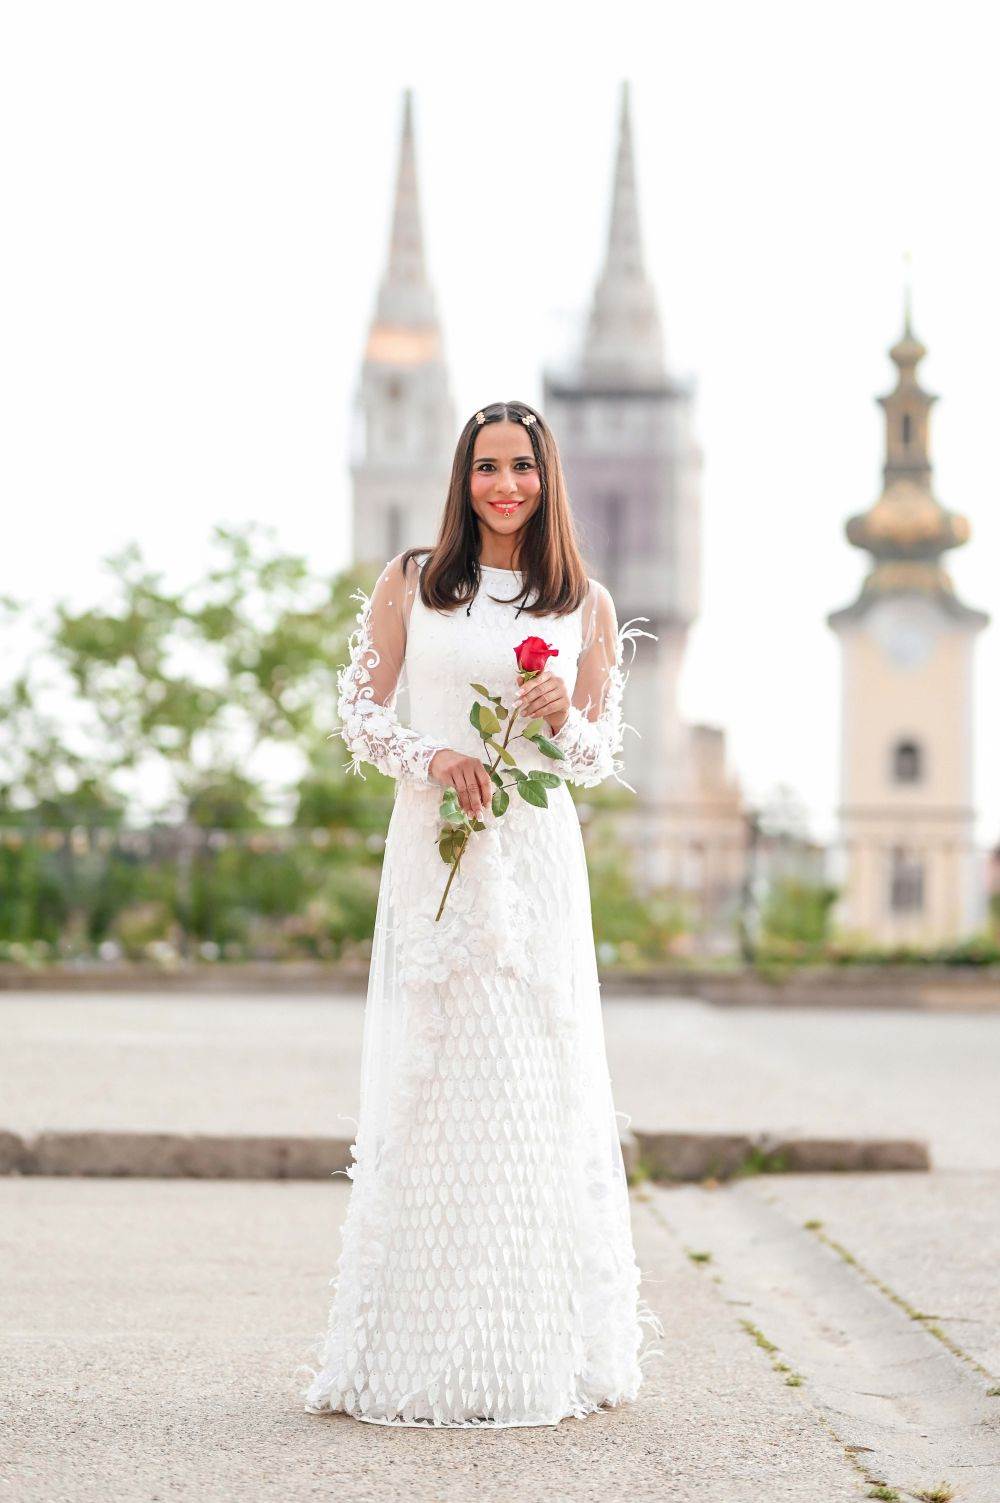 Borna Kotromanić na modnu reviju došla u vjenčanici